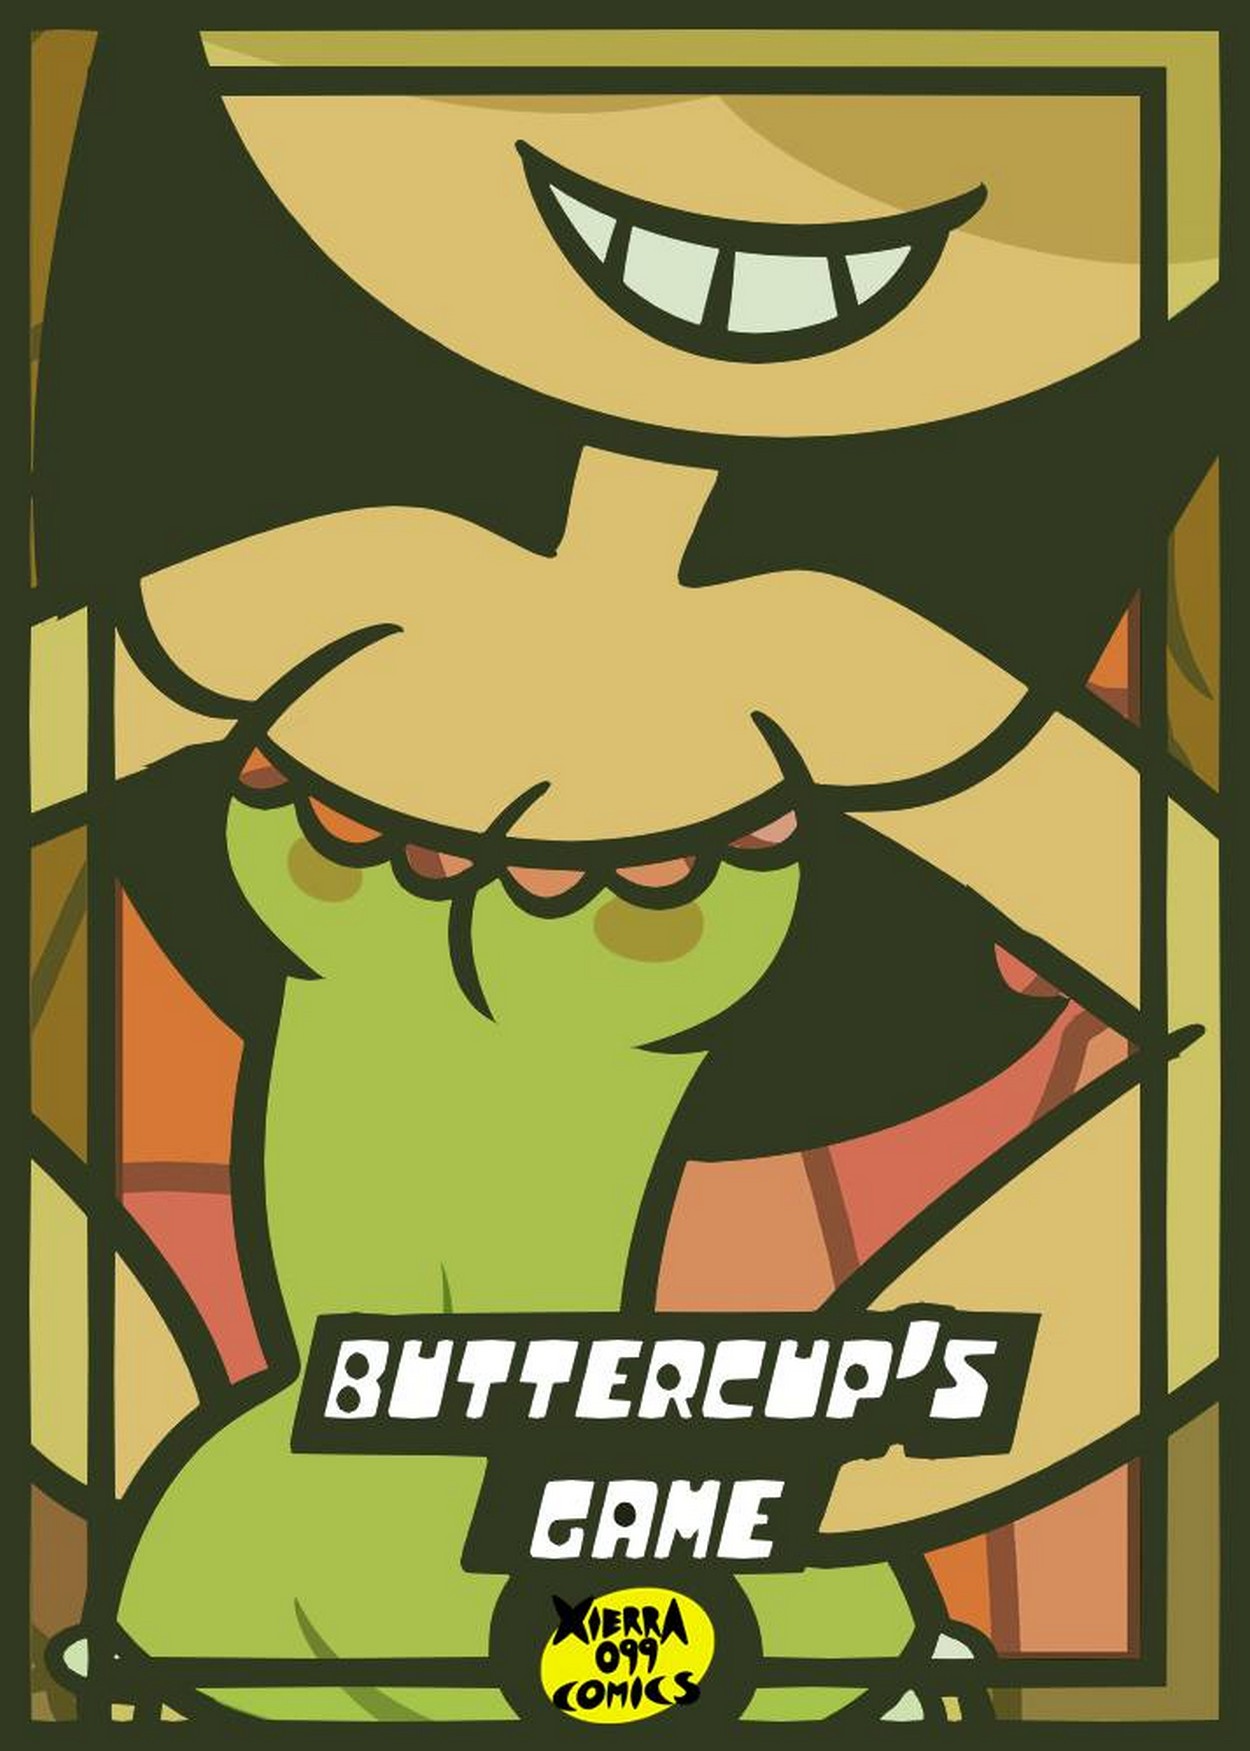 Buttercups-Game-01.jpg